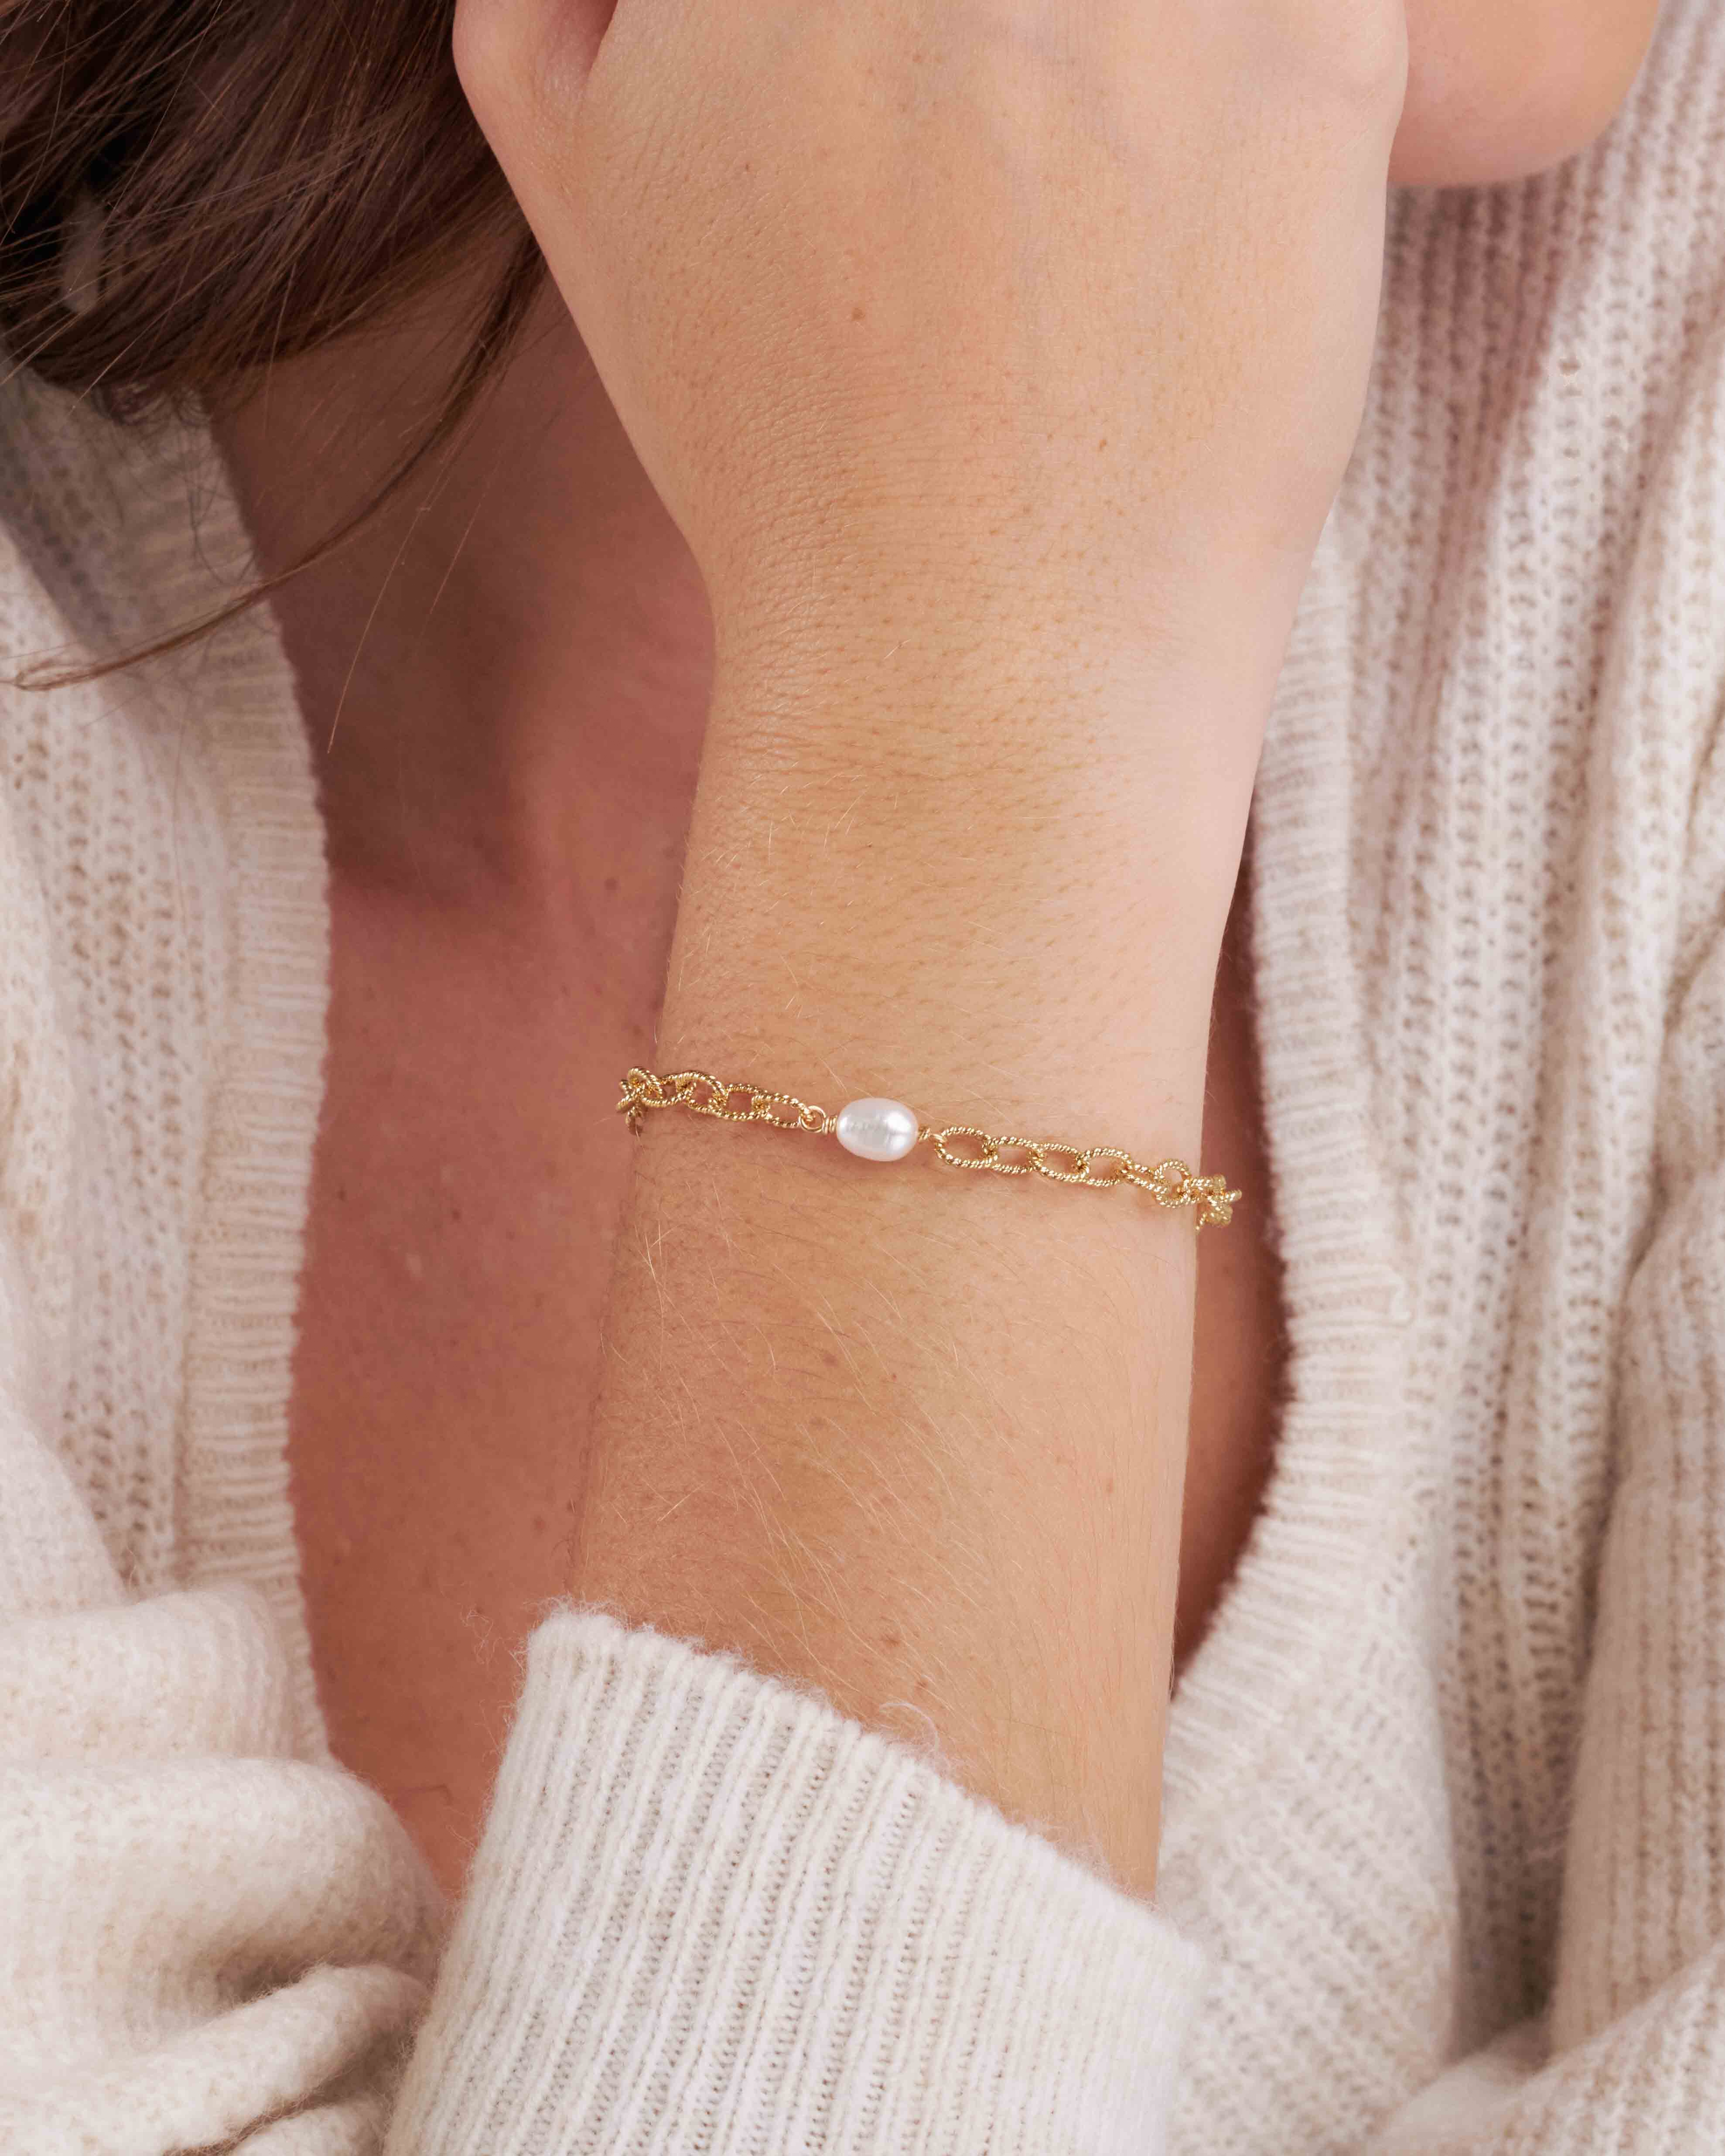 Bracelet en plaqué or 3 microns composé d'une chaîne ovale facetté accompagné d'une perle de culture ovale made in France.